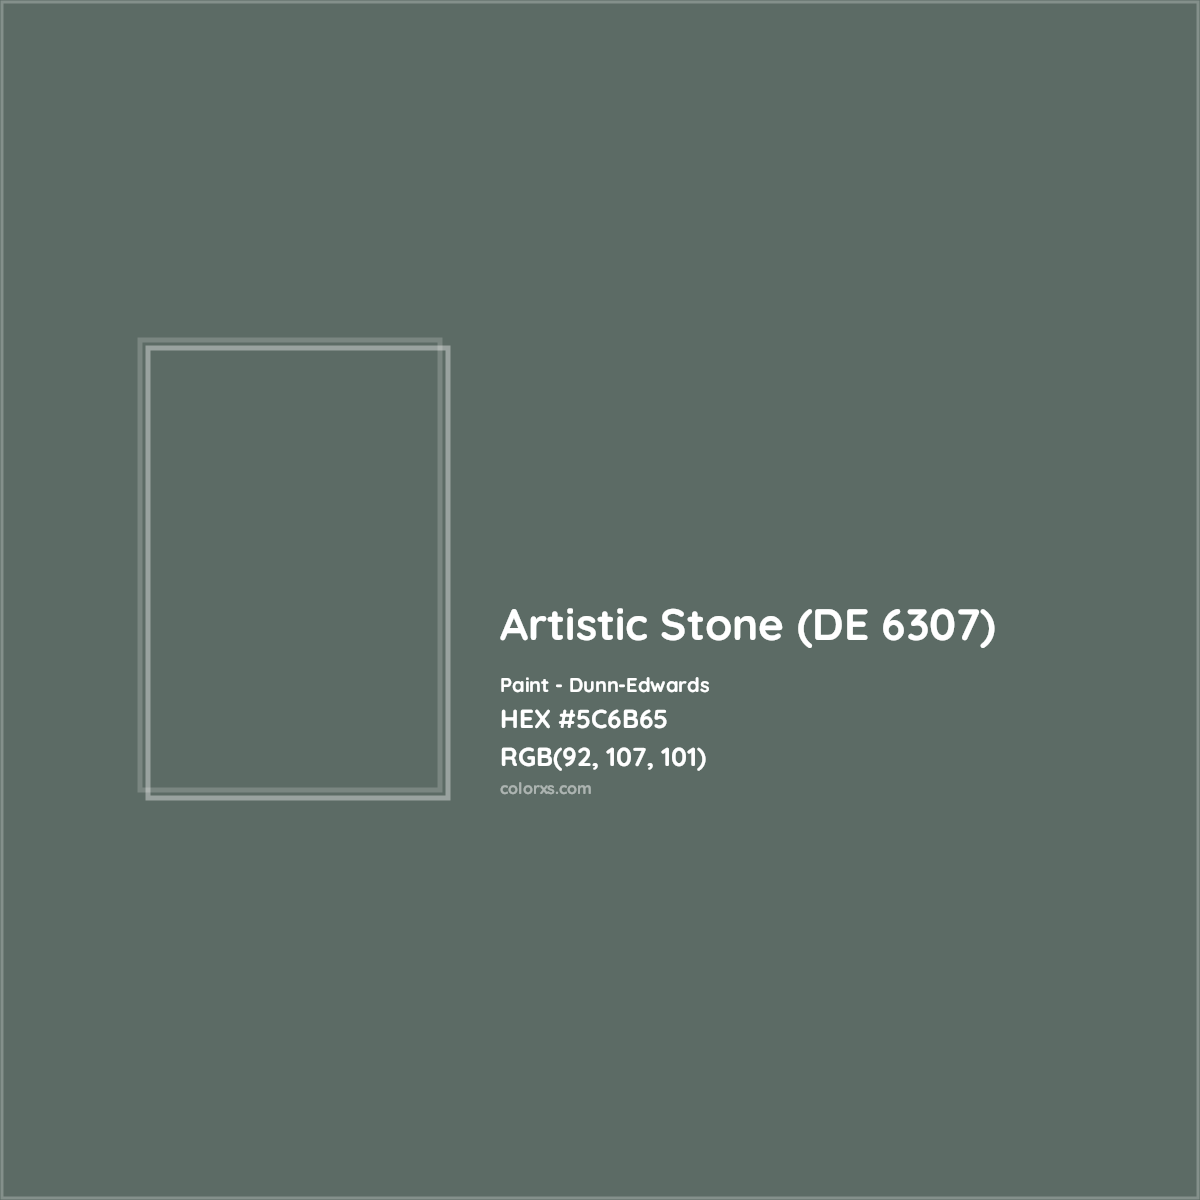 HEX #5C6B65 Artistic Stone (DE 6307) Paint Dunn-Edwards - Color Code